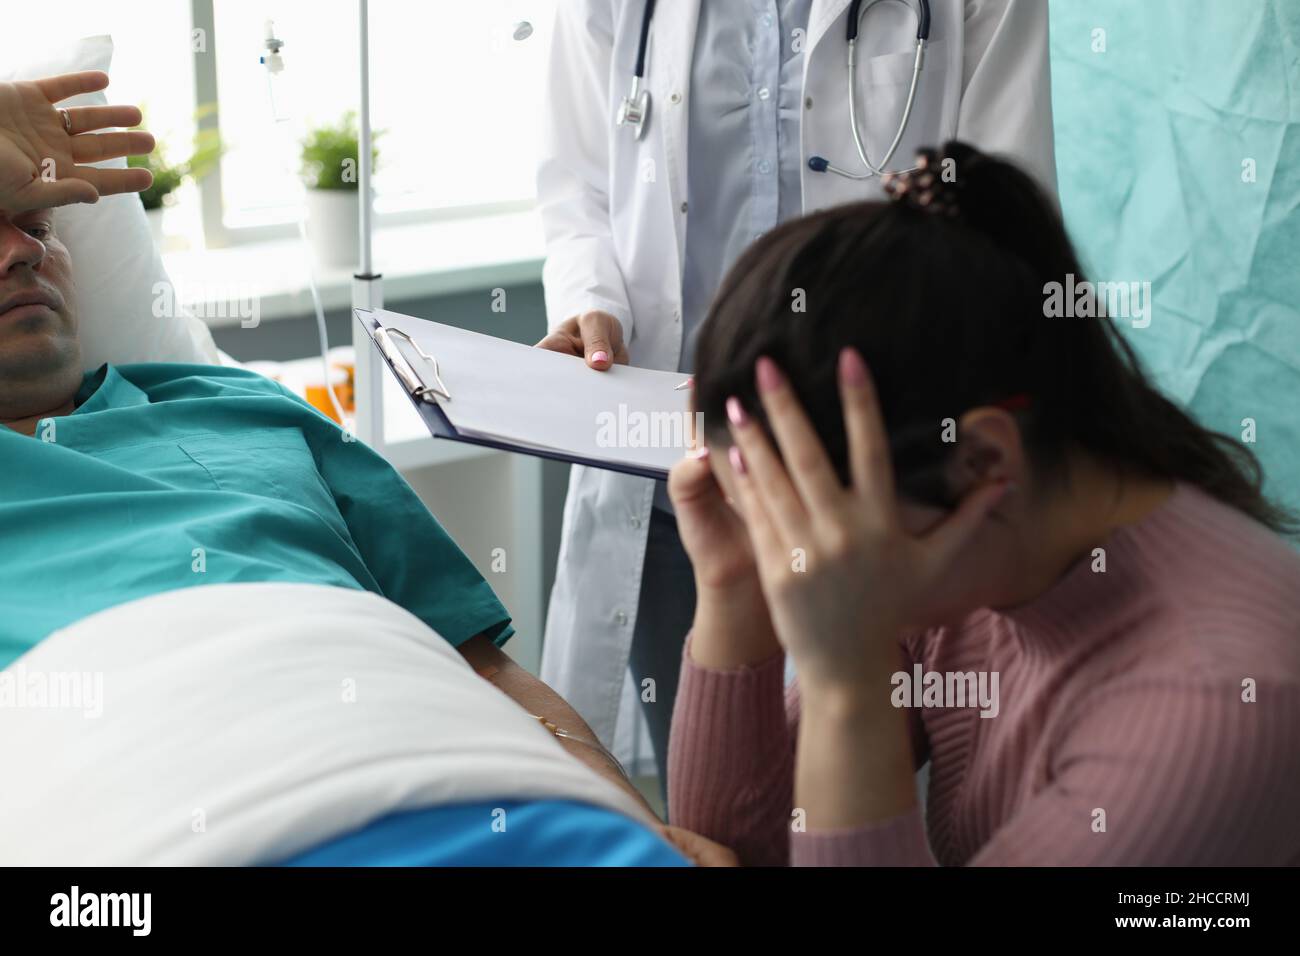 Médecin tenant des documents devant la femme et le patient qui pleurent dans la chambre d'hôpital Banque D'Images